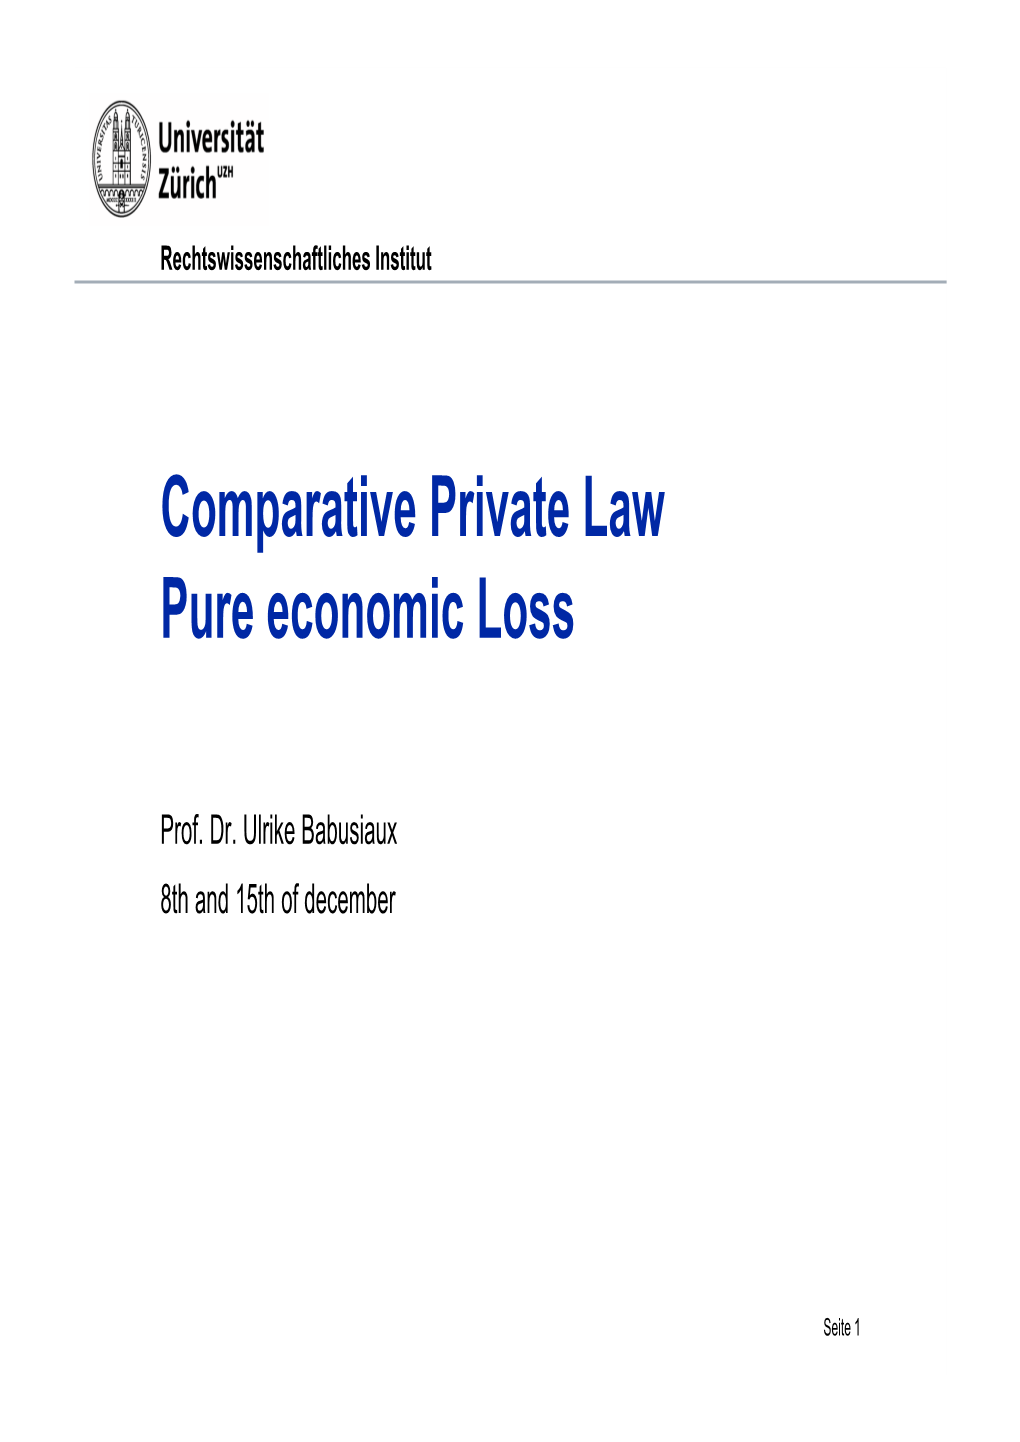 Comparative Private Law Pure Economic Loss